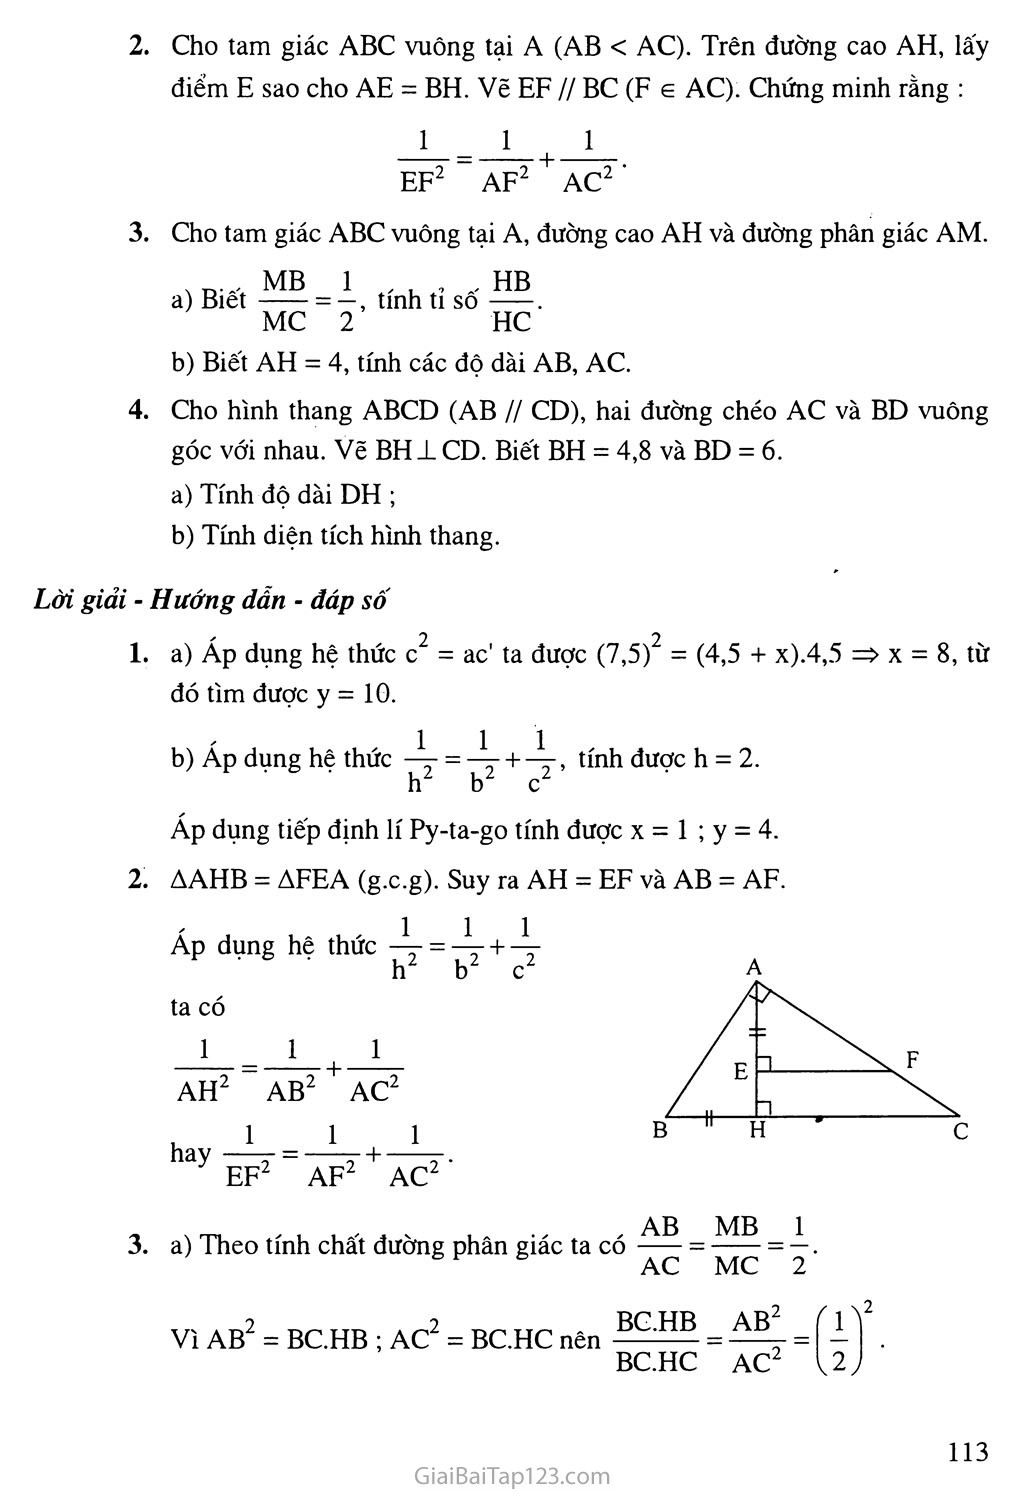 Bài 1. Một số hệ thức về cạnh và đường cao trong tam giác vuông trang 5